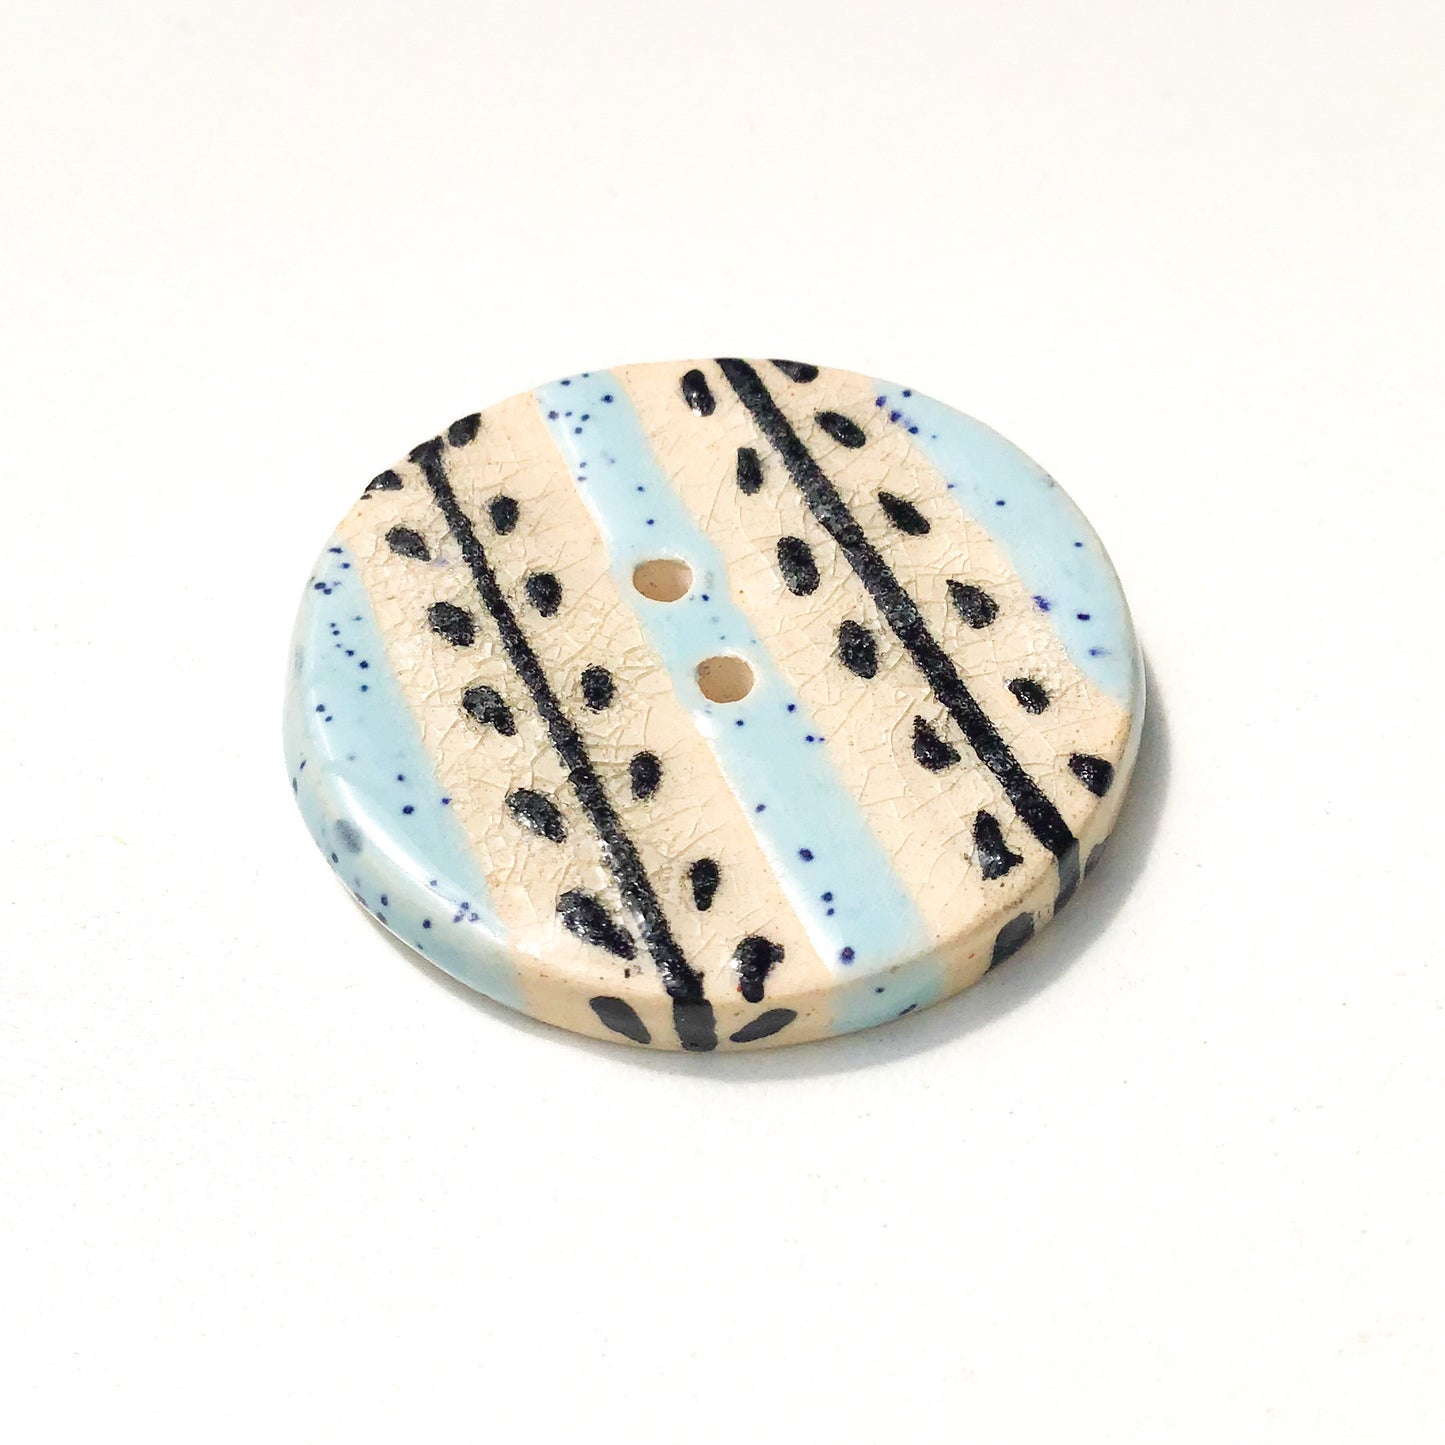 Speckled Blue & Black Vine Button - Large Ceramic Button - 1 7/16"